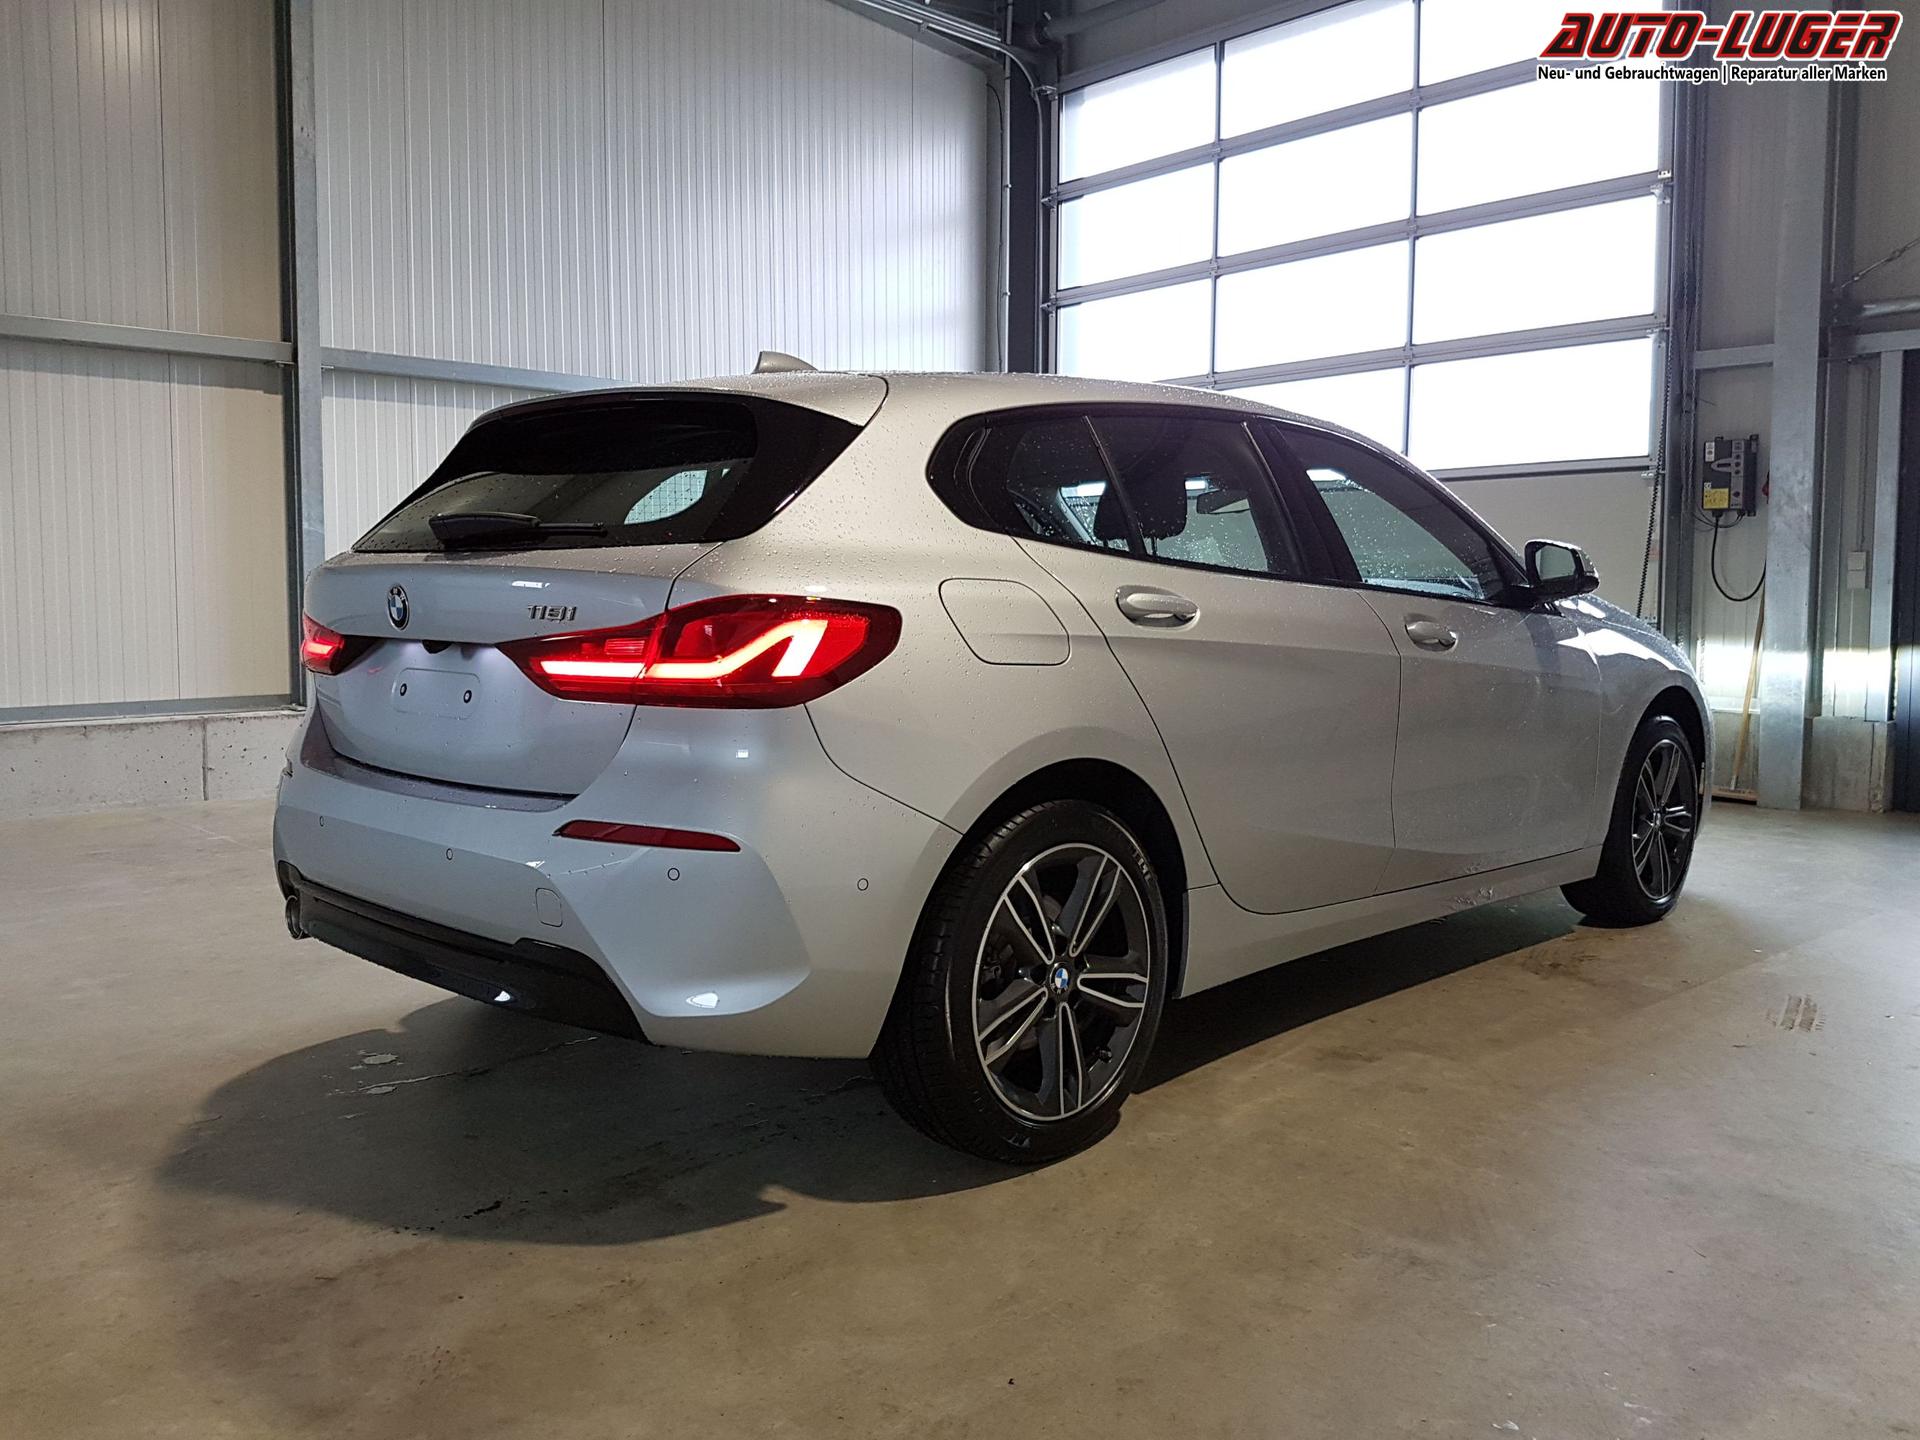 2021 BMW 1er (F40): adaptive LED-Scheinwerfer Test [4K